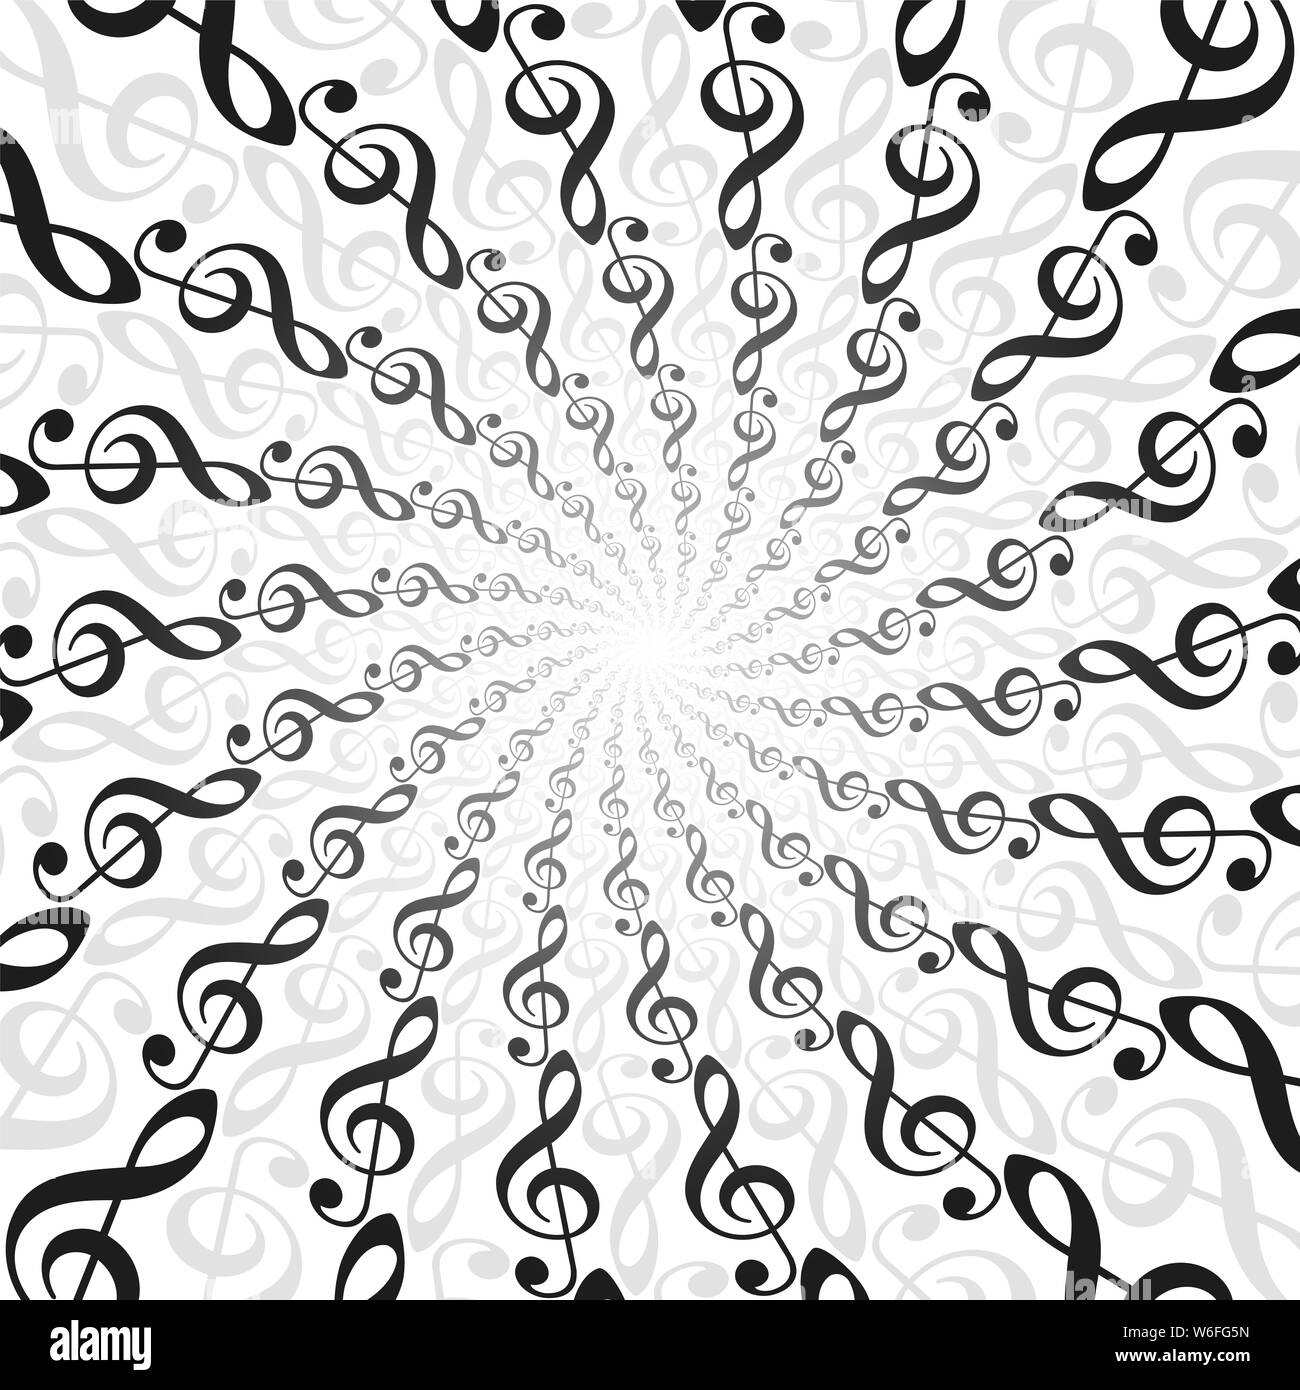 Música clefs agudos spirale patrón. Túnel energético radial con el centro de la luz. Ilustración de fondo fractal circulares trenzados. Foto de stock